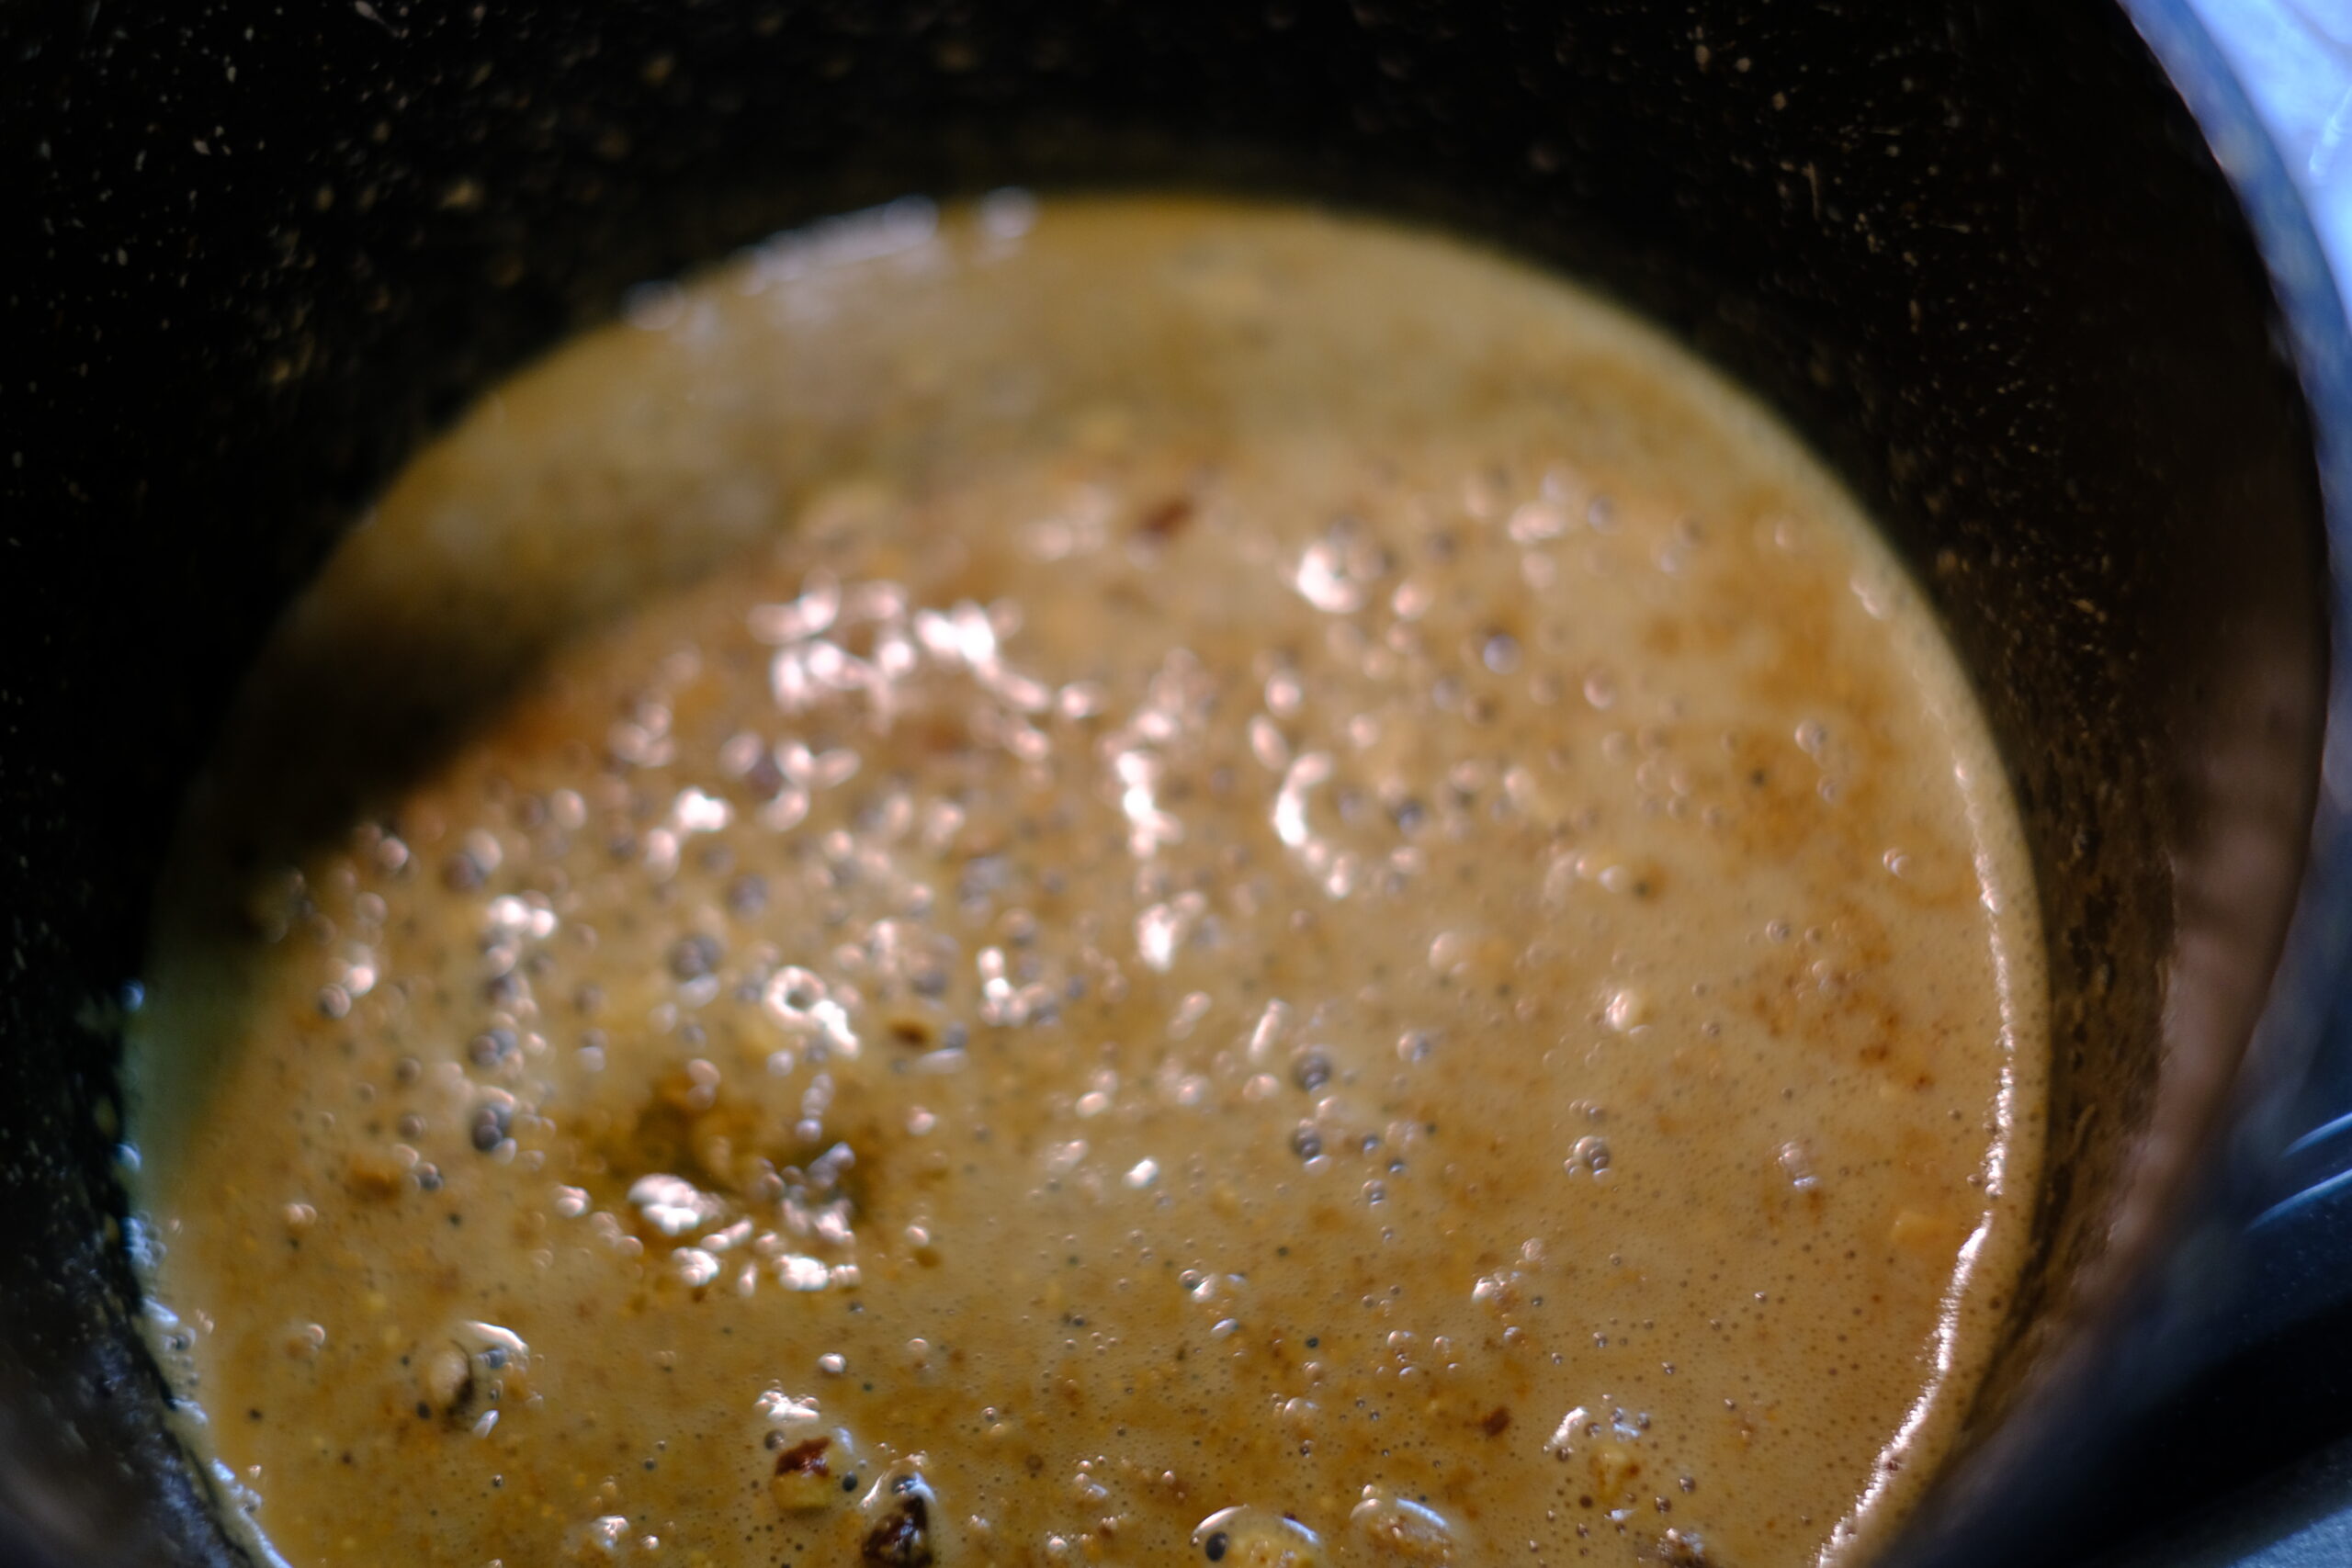 鍋に入れたバターが溶け、アーモンドバターと馴染んでいる状態の画像です